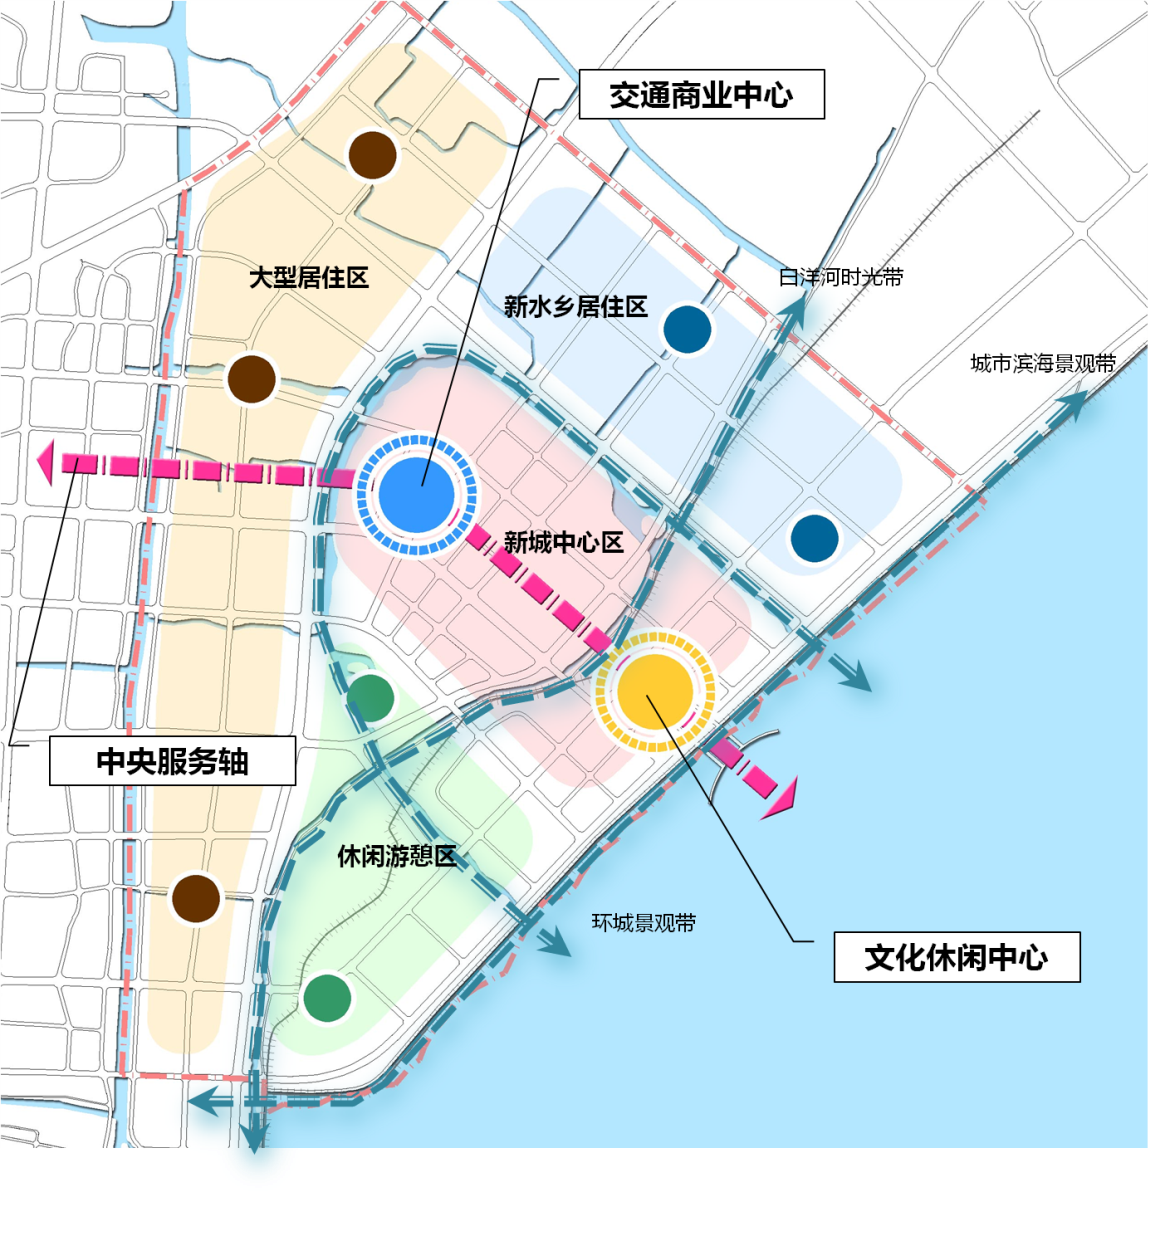 海盐县滨海新城围垦区块战略策划及空间指引图片